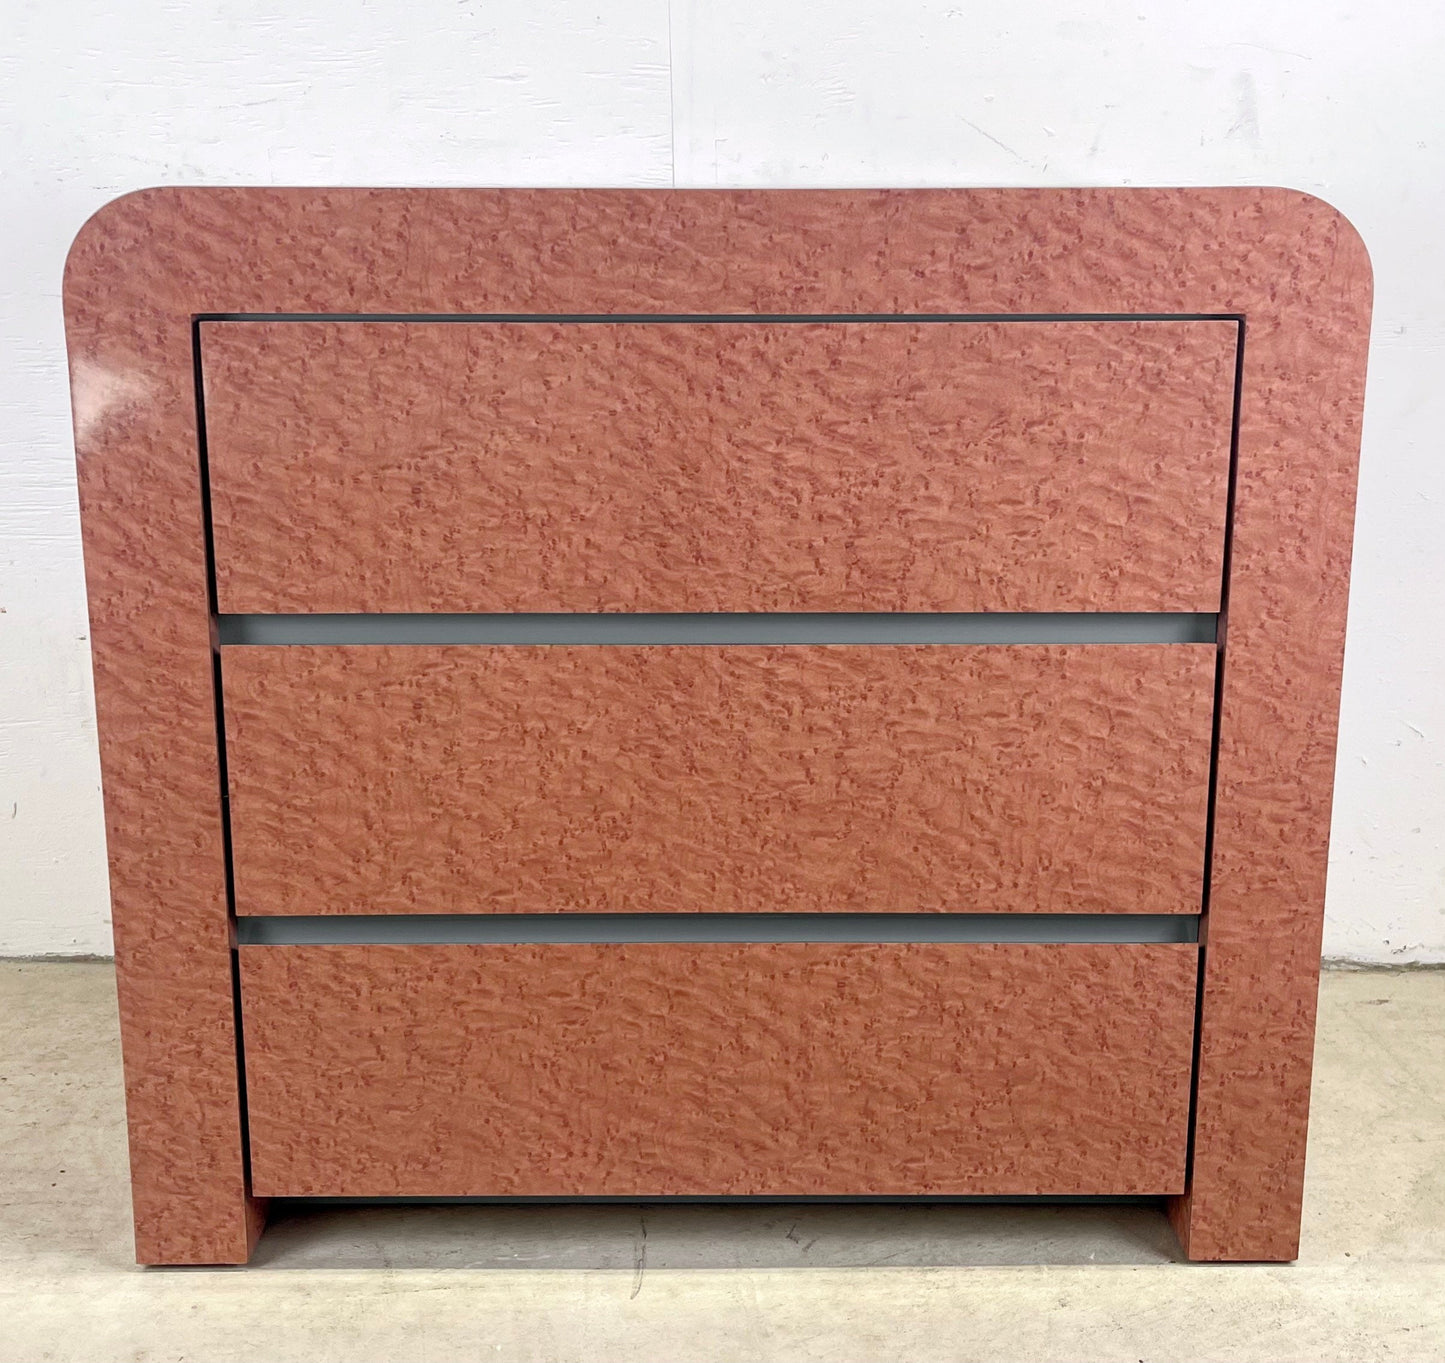 Retro Modern Three Drawer Dresser by Laminarchie Inc